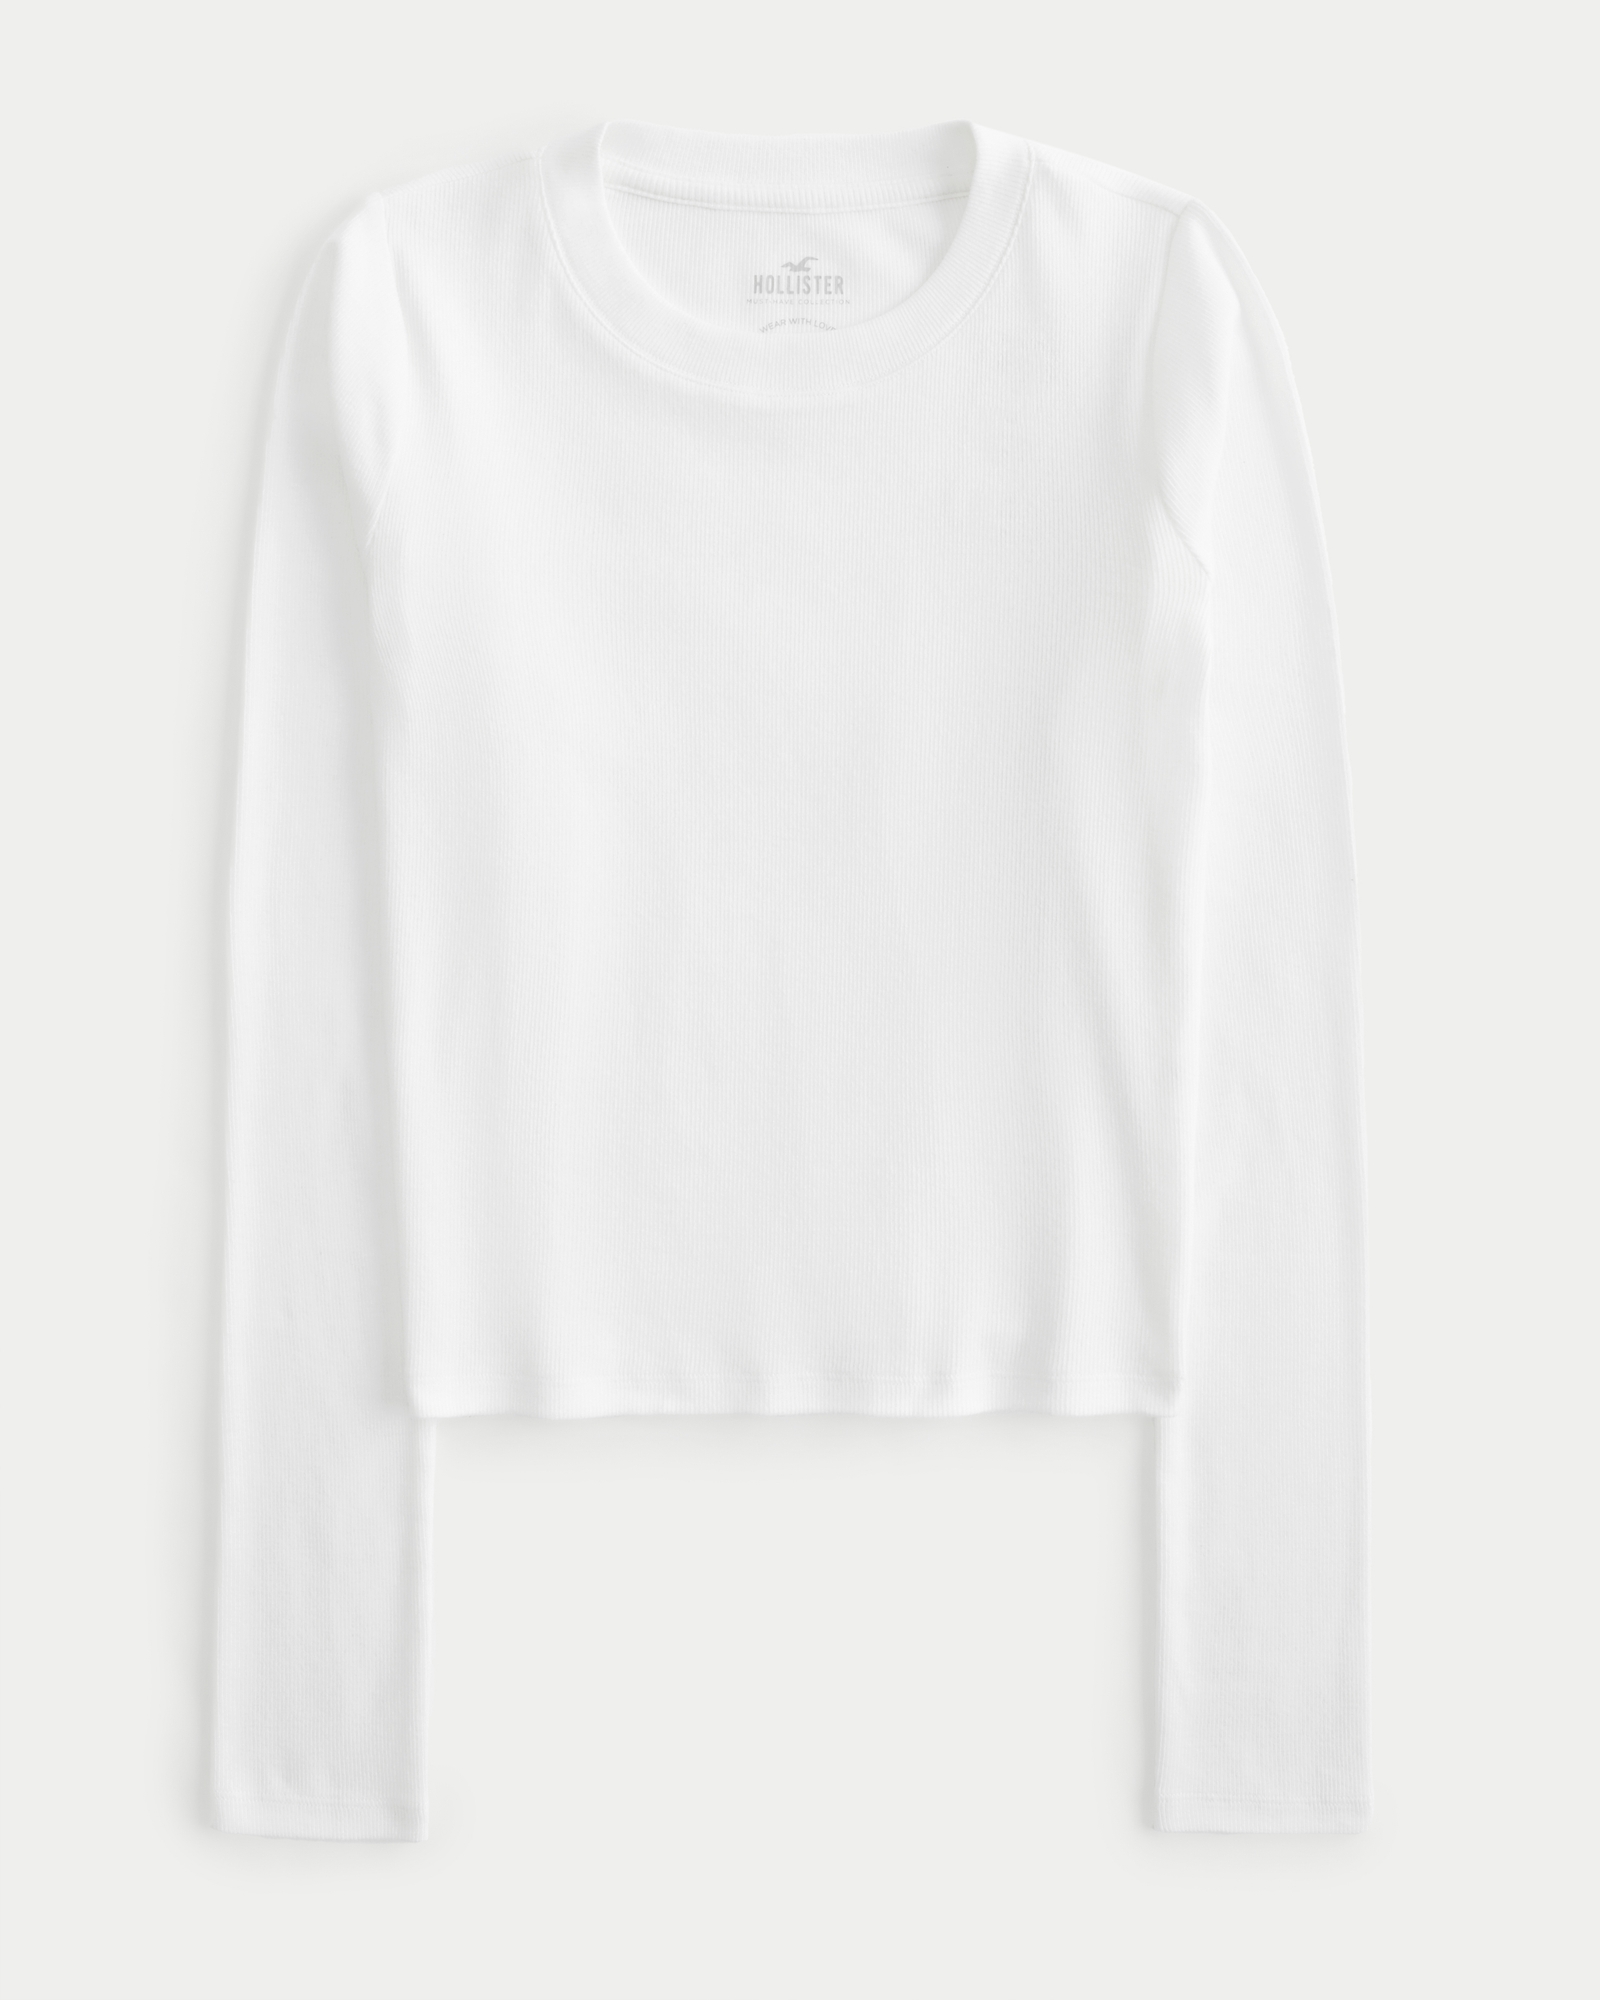 Hollister Women White Cotton Long Sleeve Button Light Weight Classic Shirt M